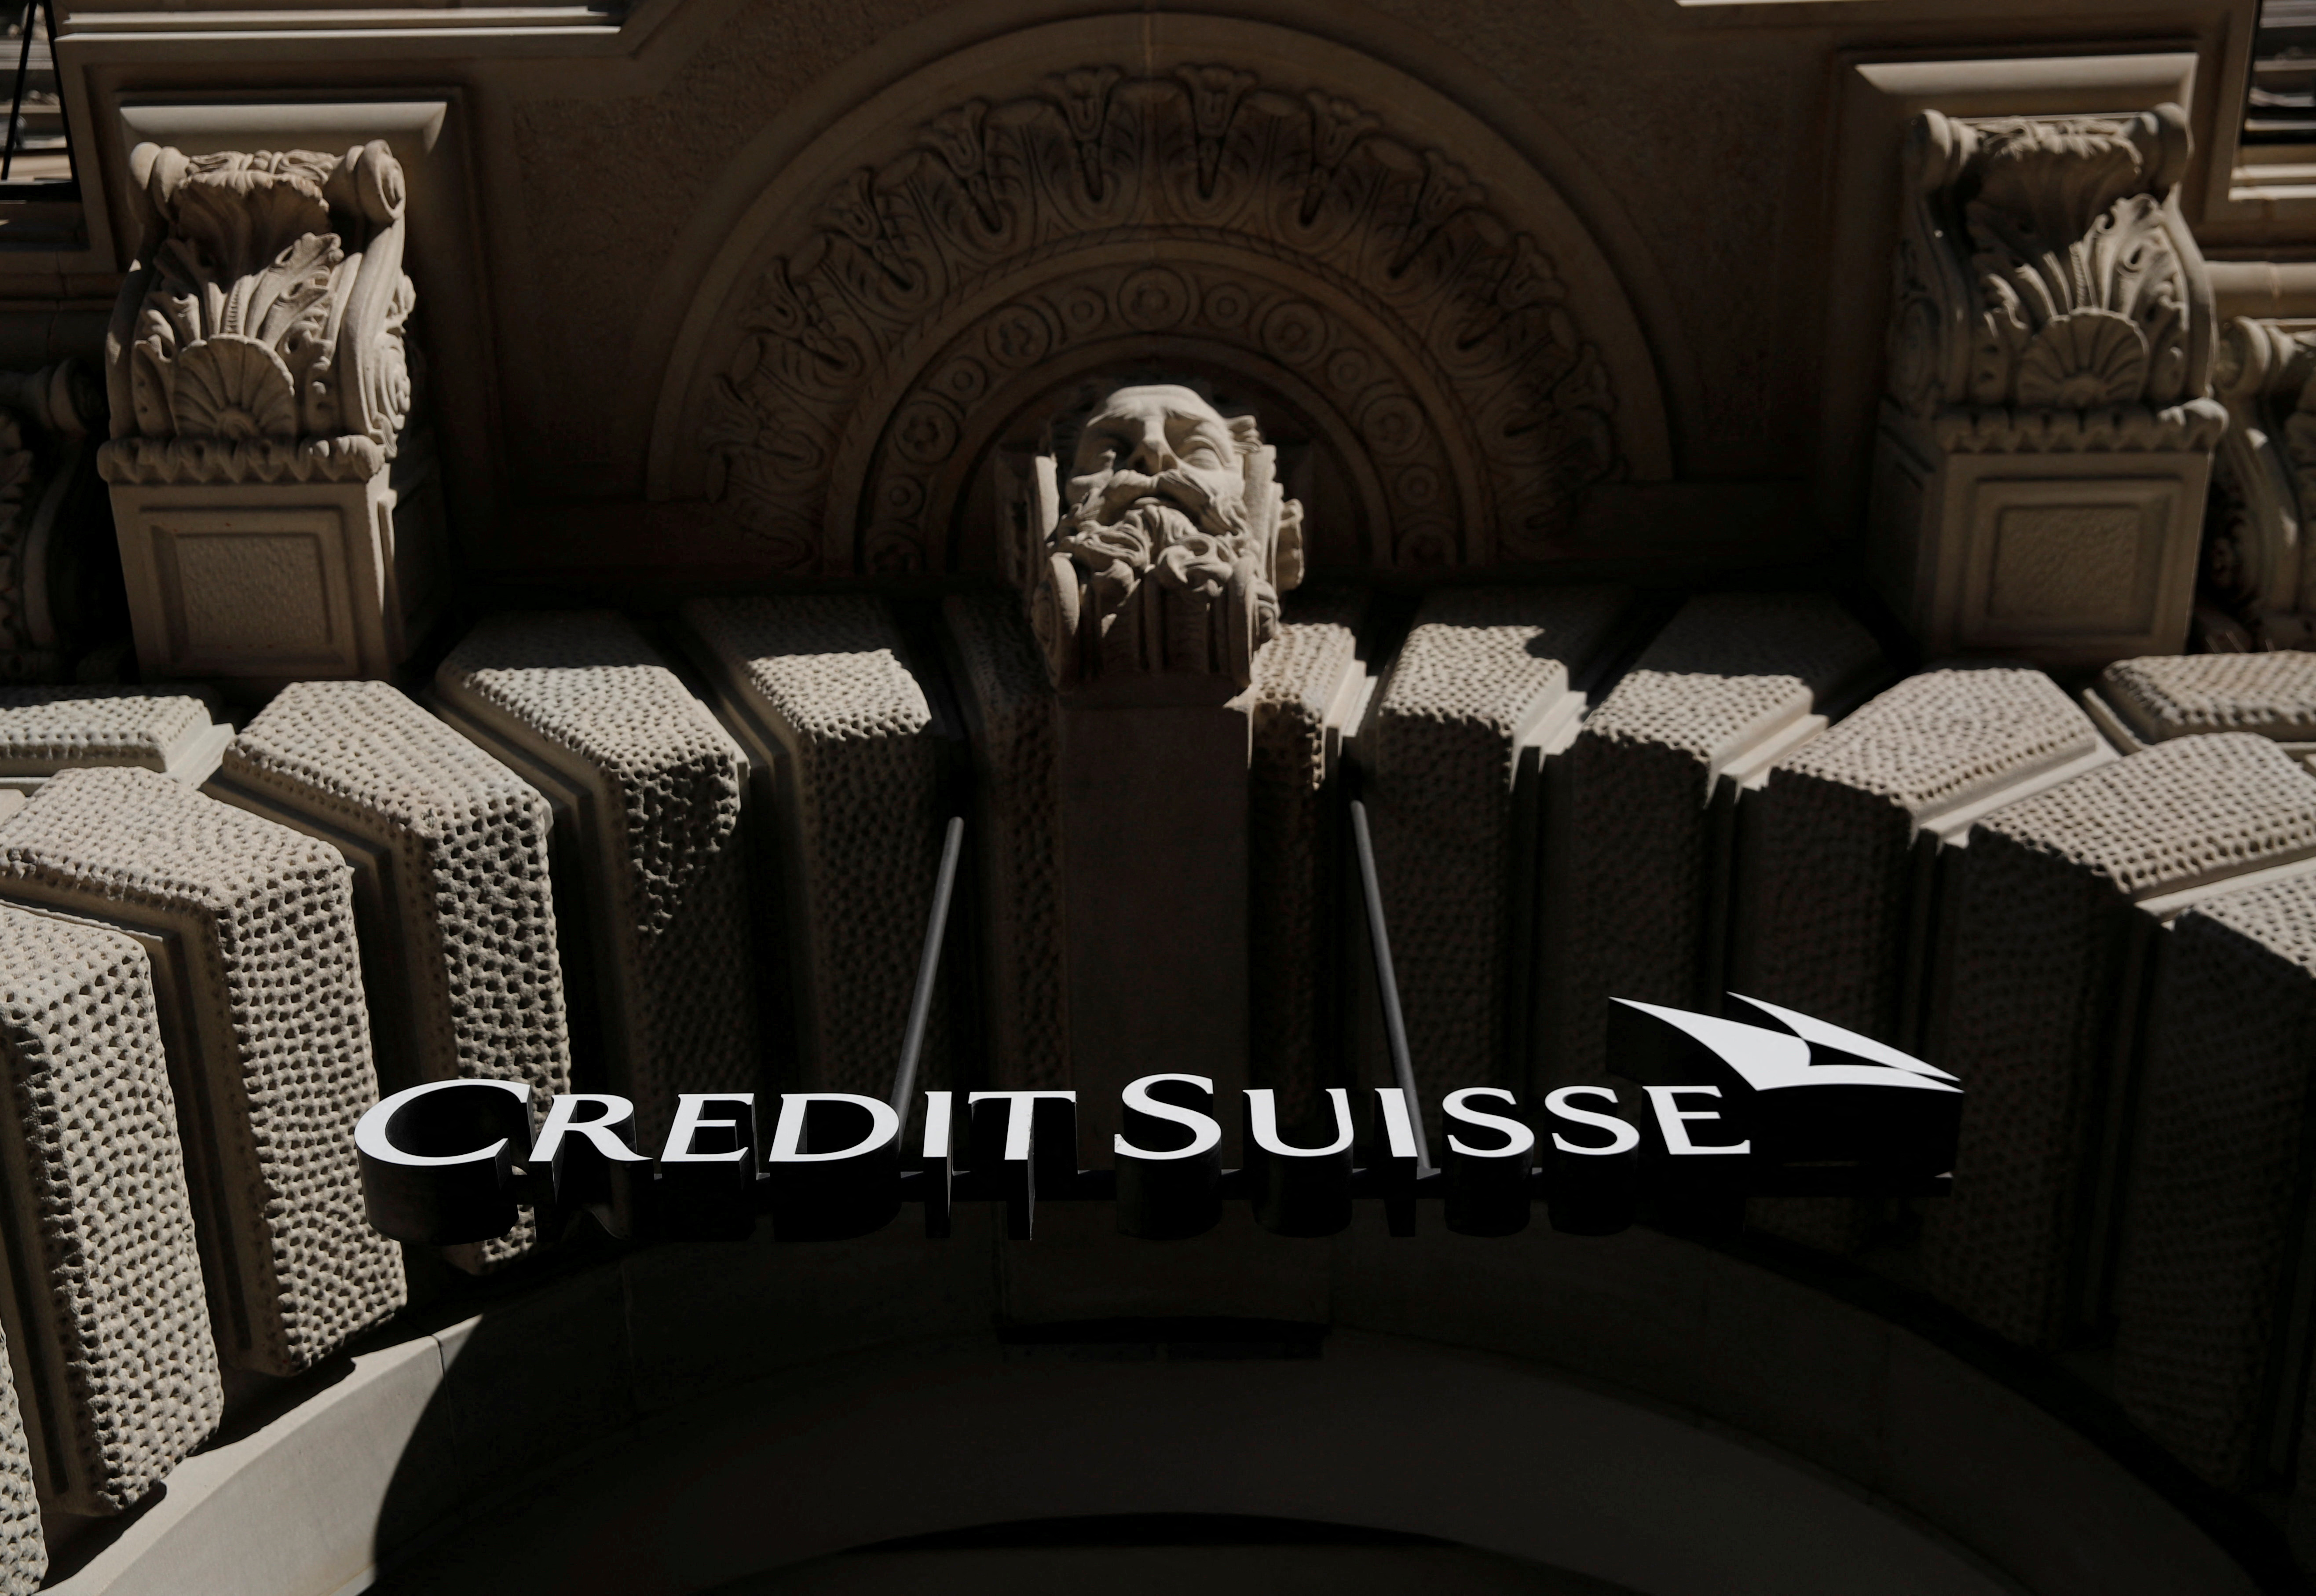 İsviçre bankası Credit Suisse Zurich'in logosu görülüyor